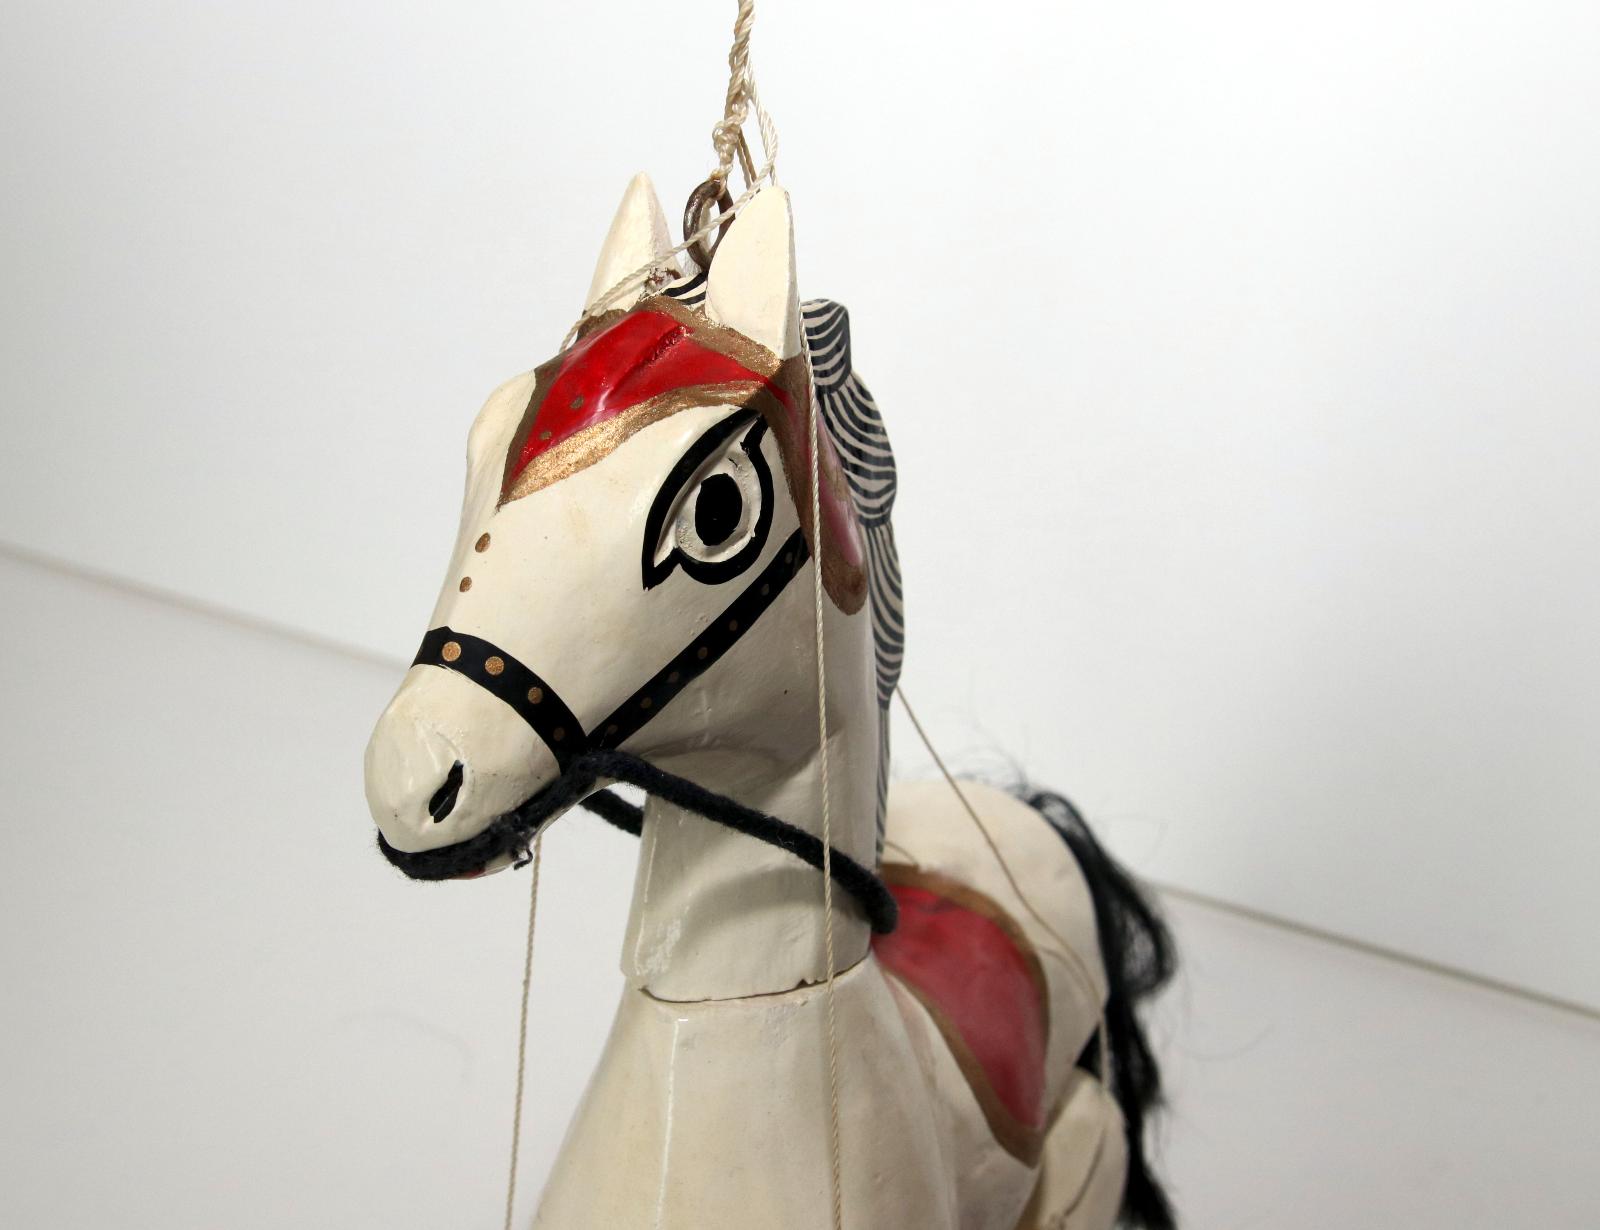 Dřevěná loutka koníka cca 60.-70. léta - koníček, kůň,loutkové divadlo - Děti